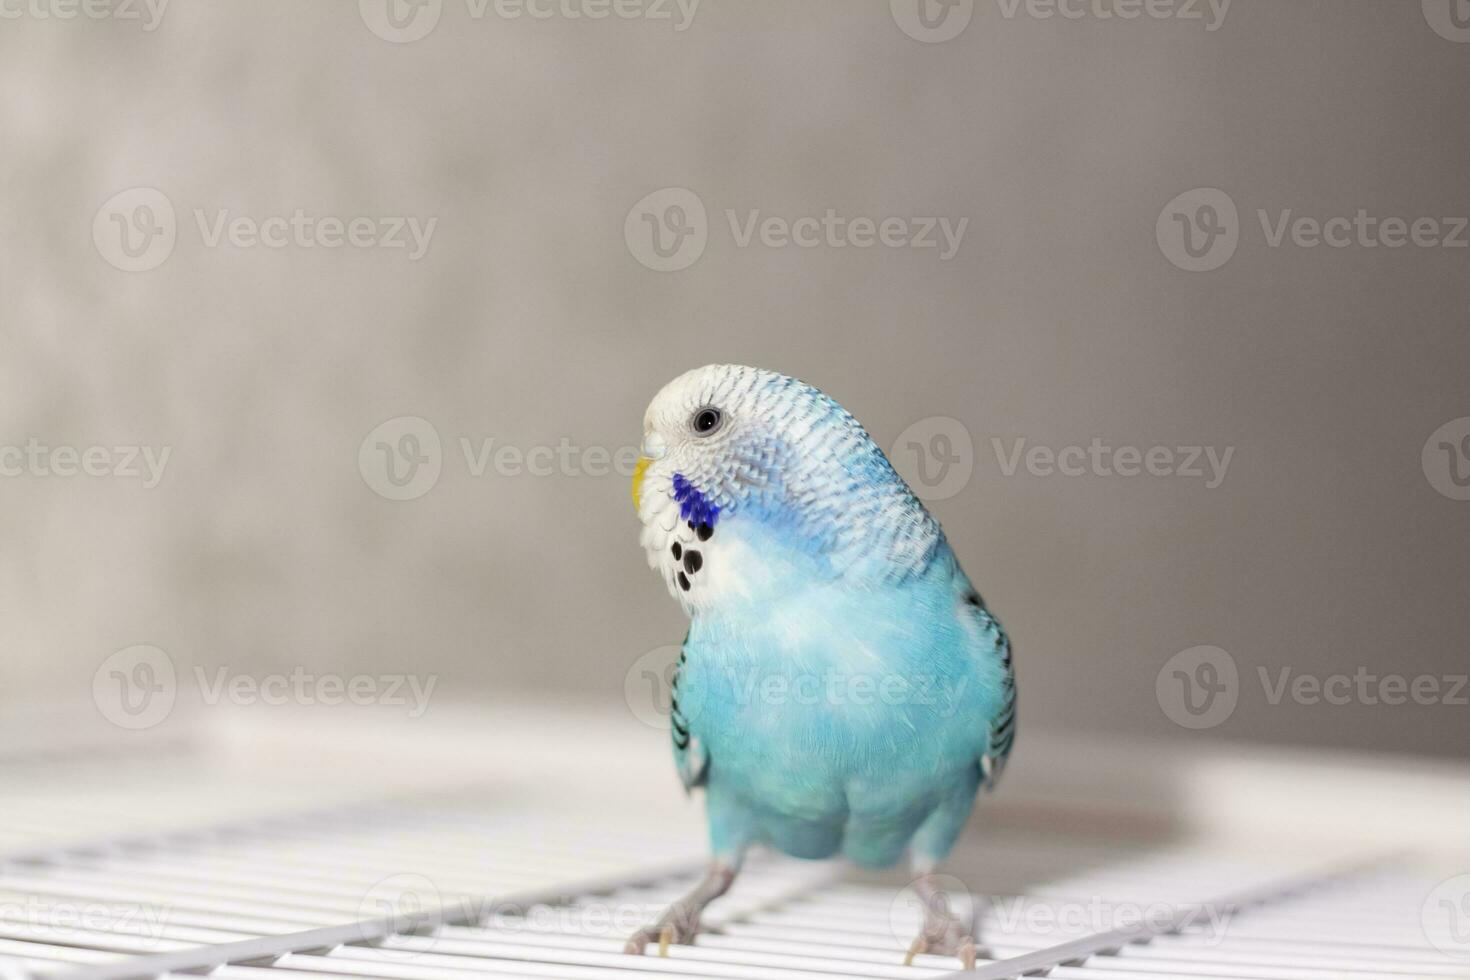 une magnifique bleu perruche est assis sans pour autant une cage. tropical des oiseaux à maison. photo